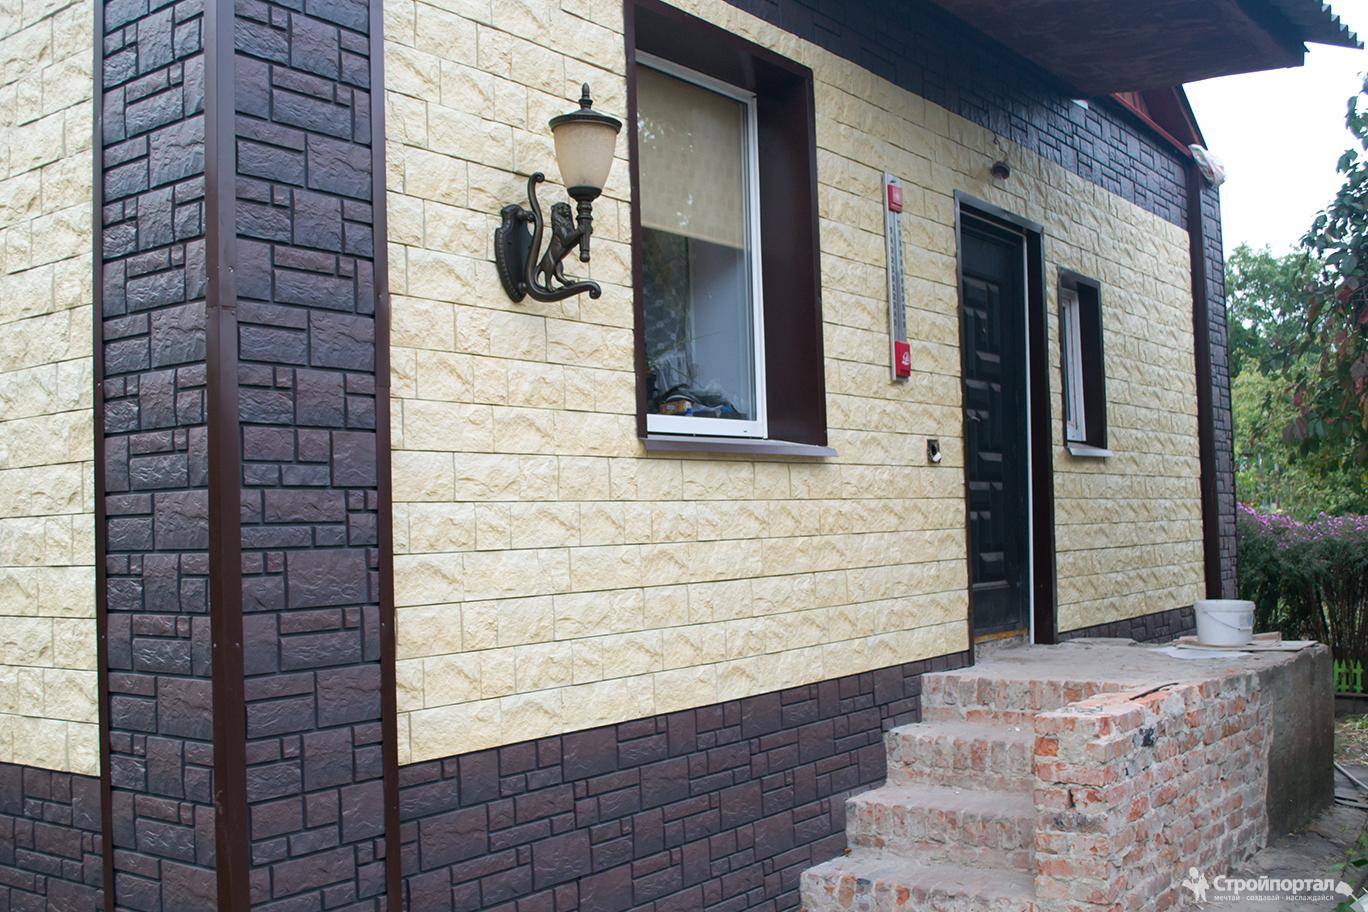 Сравнение видов фасадных панелей для наружной отделки дома